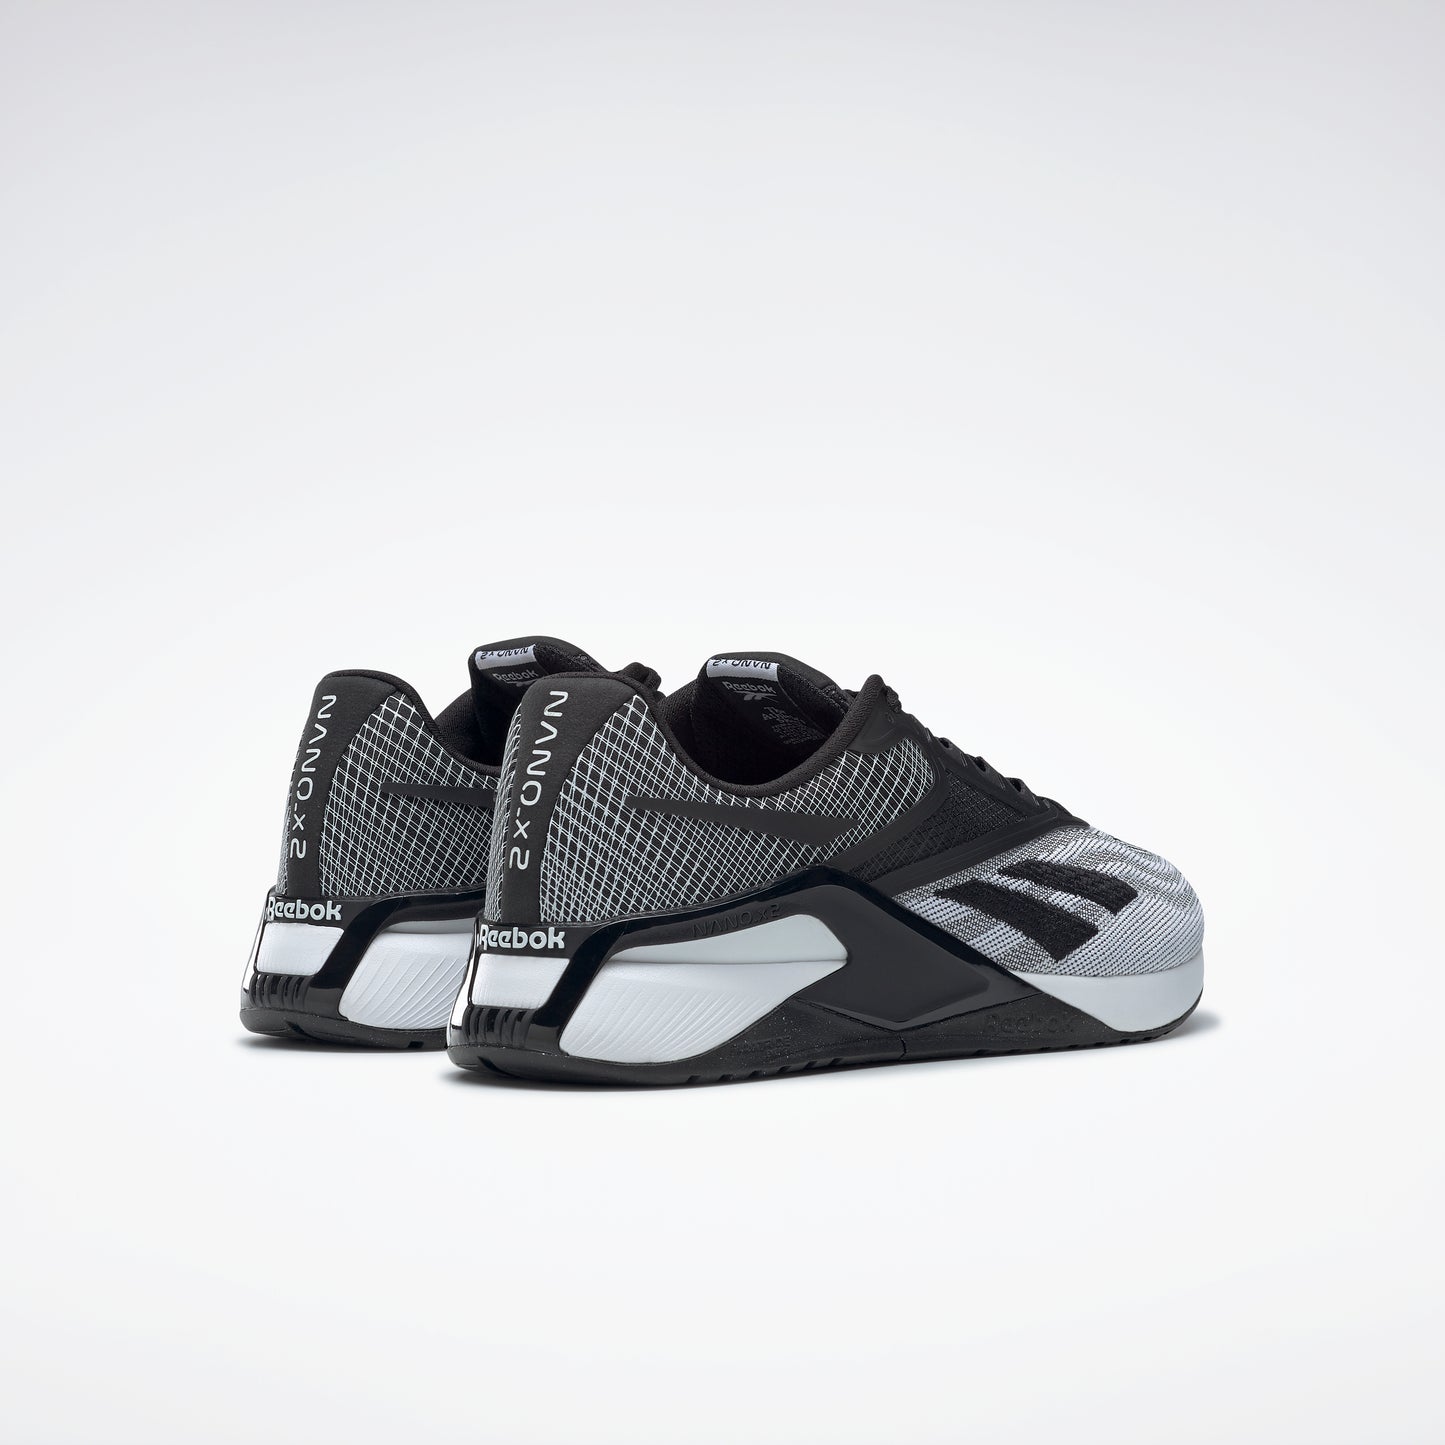 Reebok Footwear Men Reebok Nano X2 Shoes Cblack/Ftwwht/Purgry